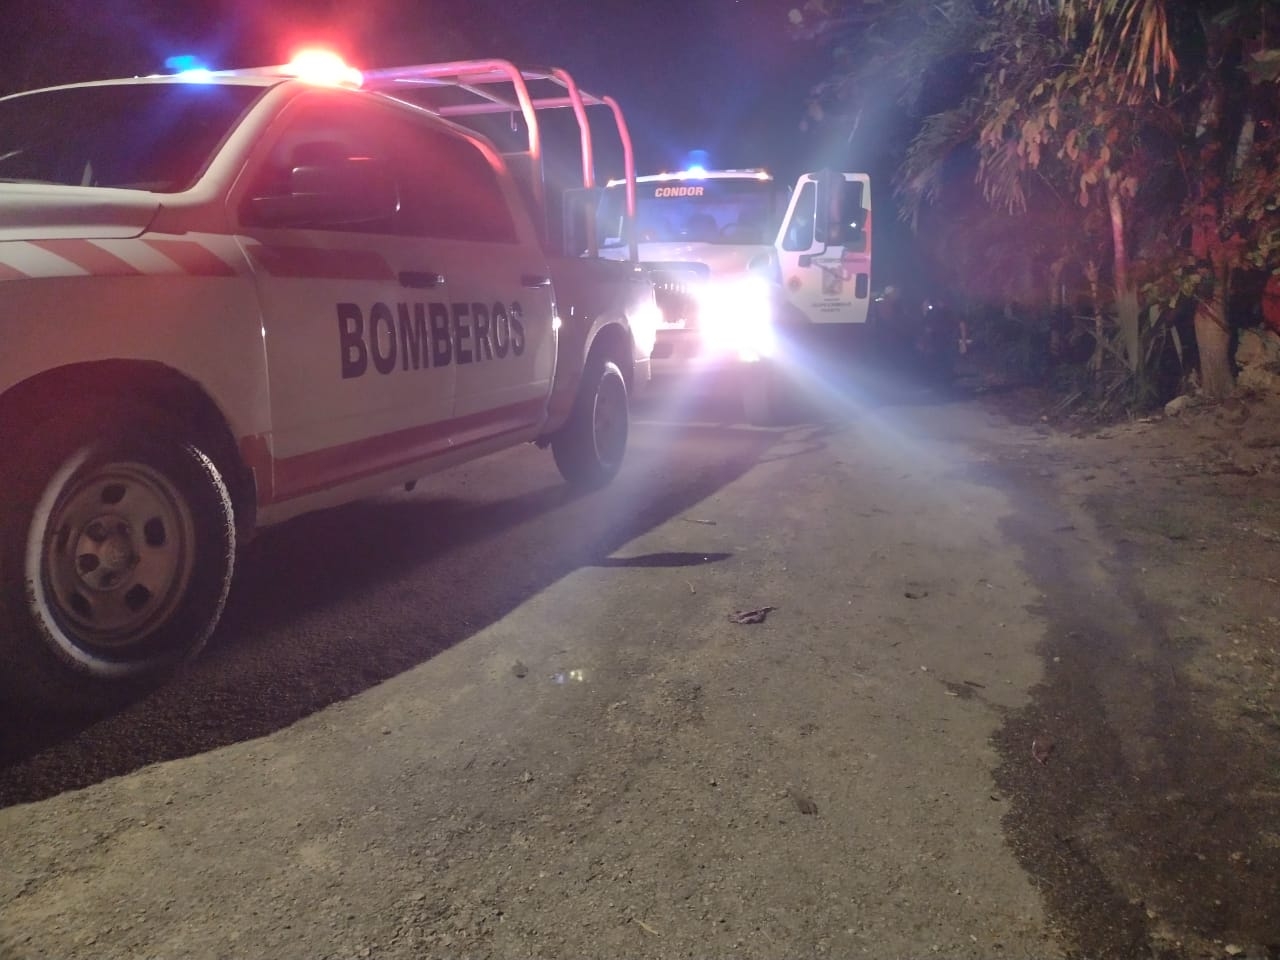 Bomberos de Carrillo Puerto acudieron sólo a verificar que el incendio ya estaba apagado y se retiraron de X-Hazil Sur